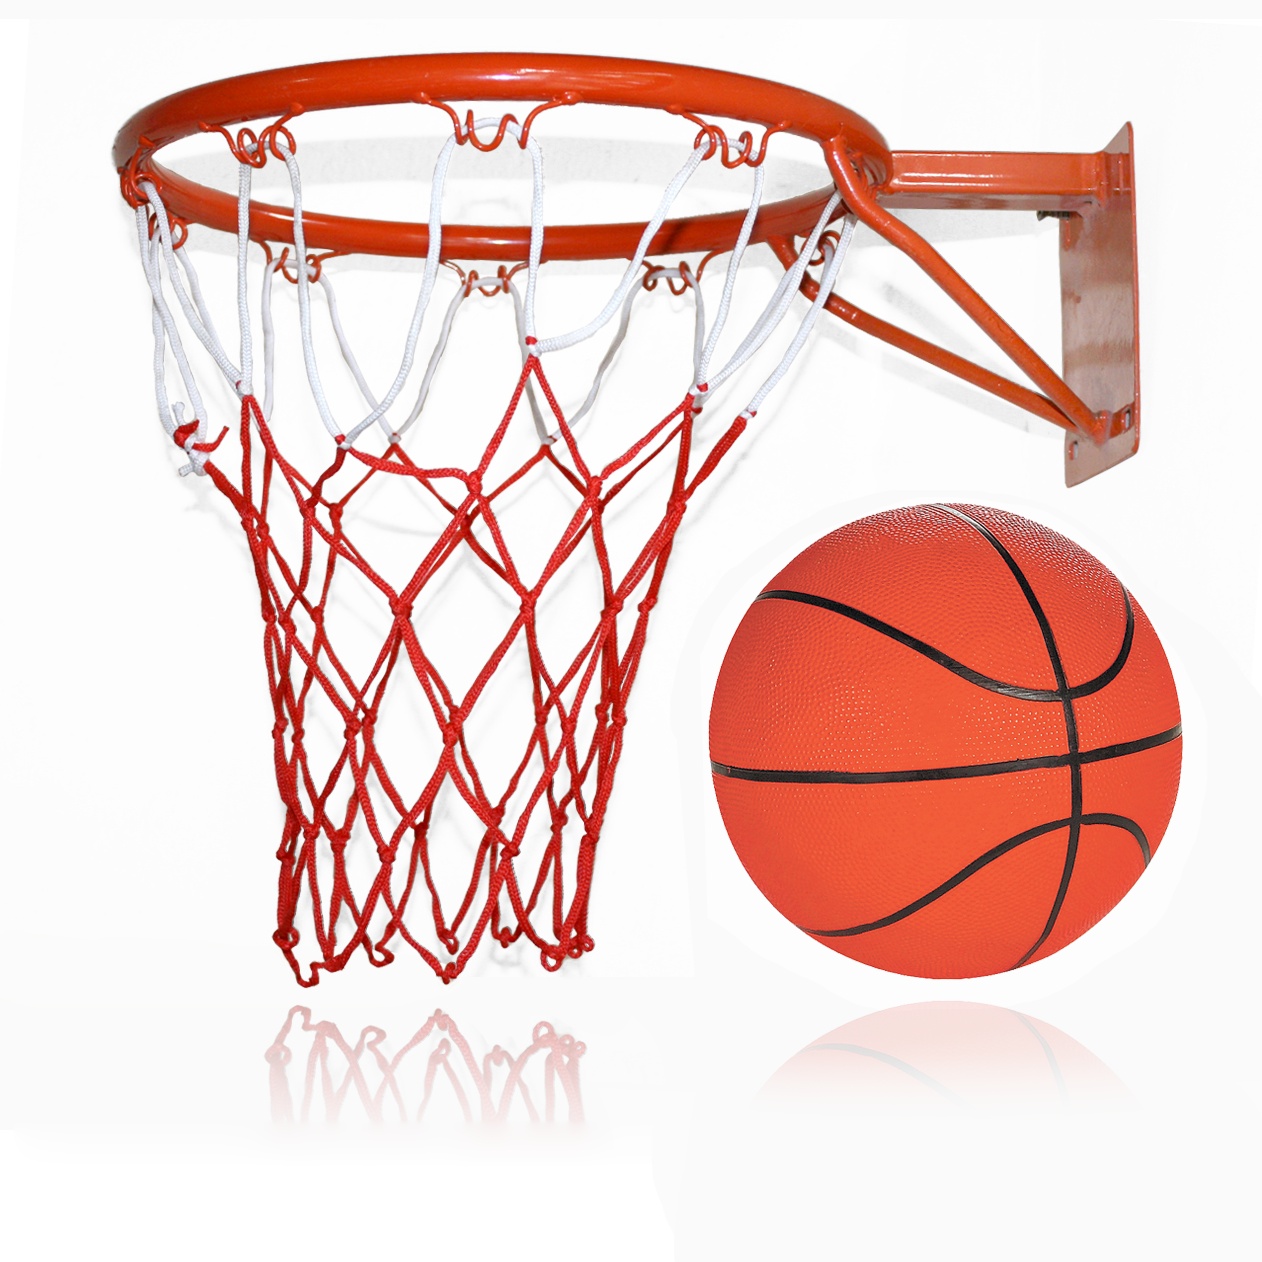 Giá bóng rổ: Một quả bóng rổ tiêu chuẩn có giá bao nhiêu tiền?